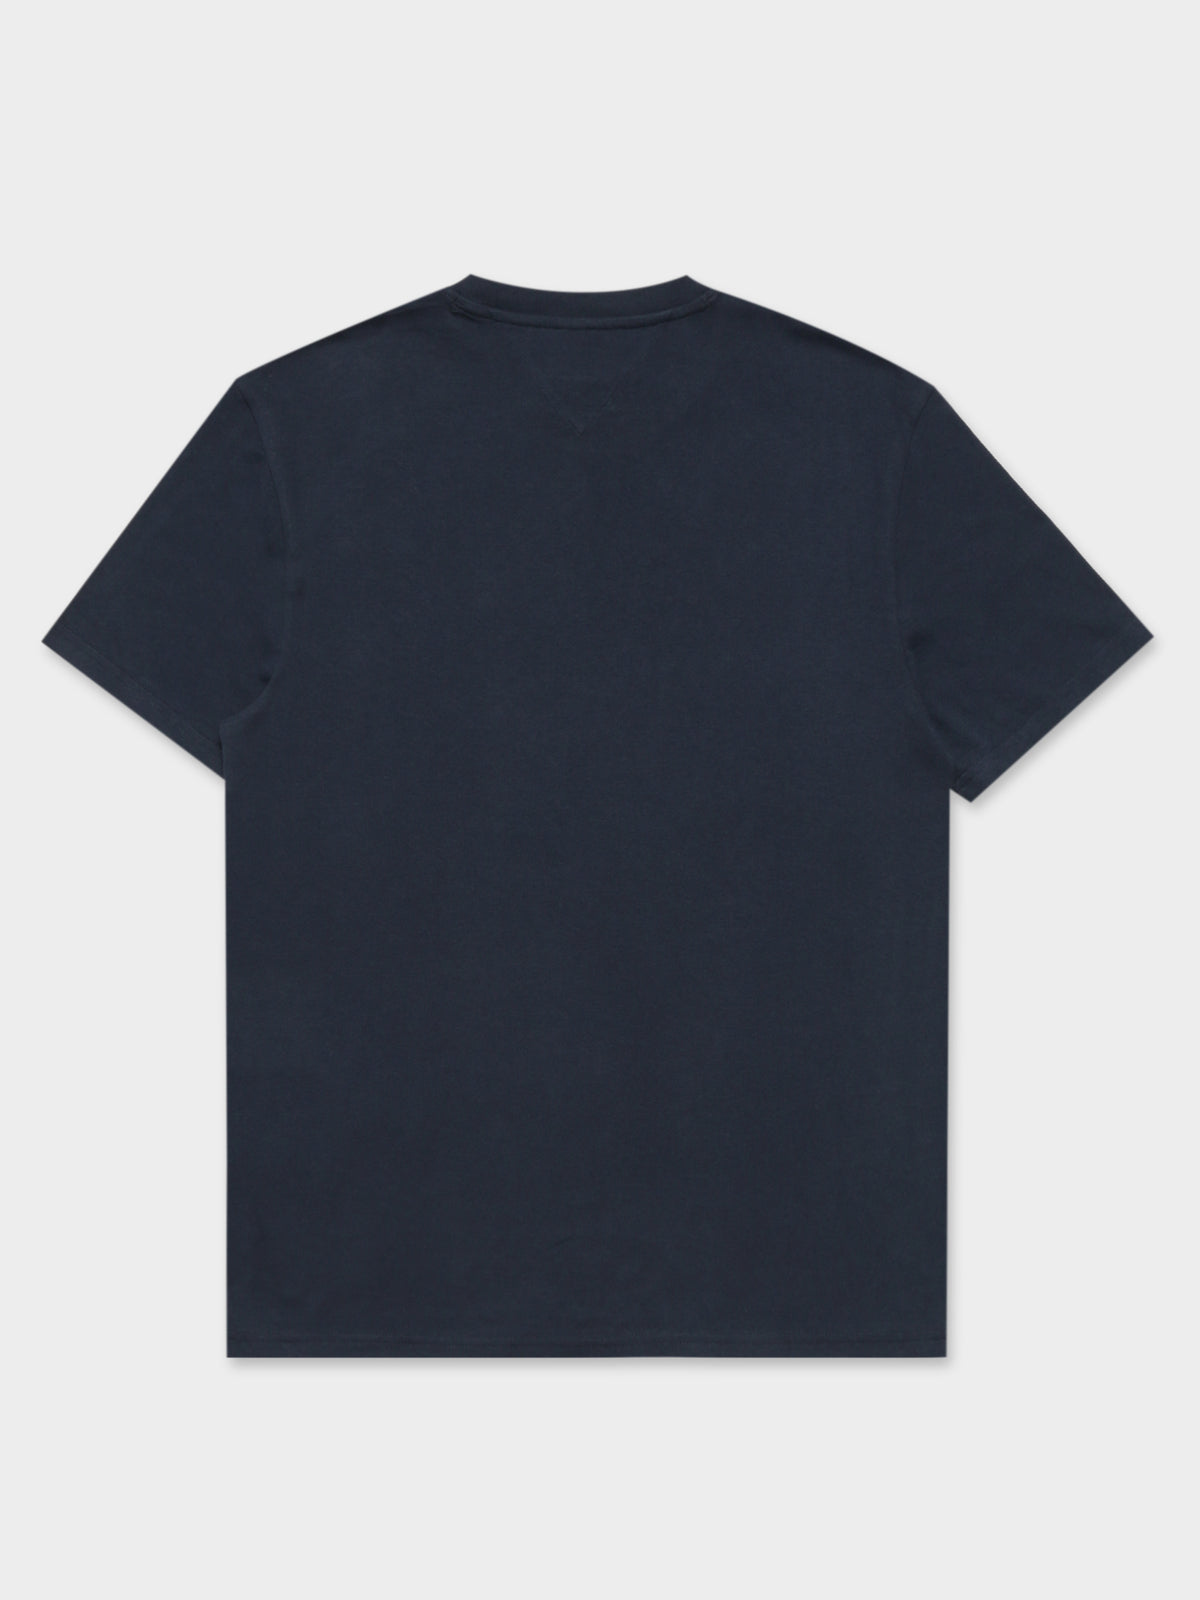 NYC Originals T-Shirt in Navy